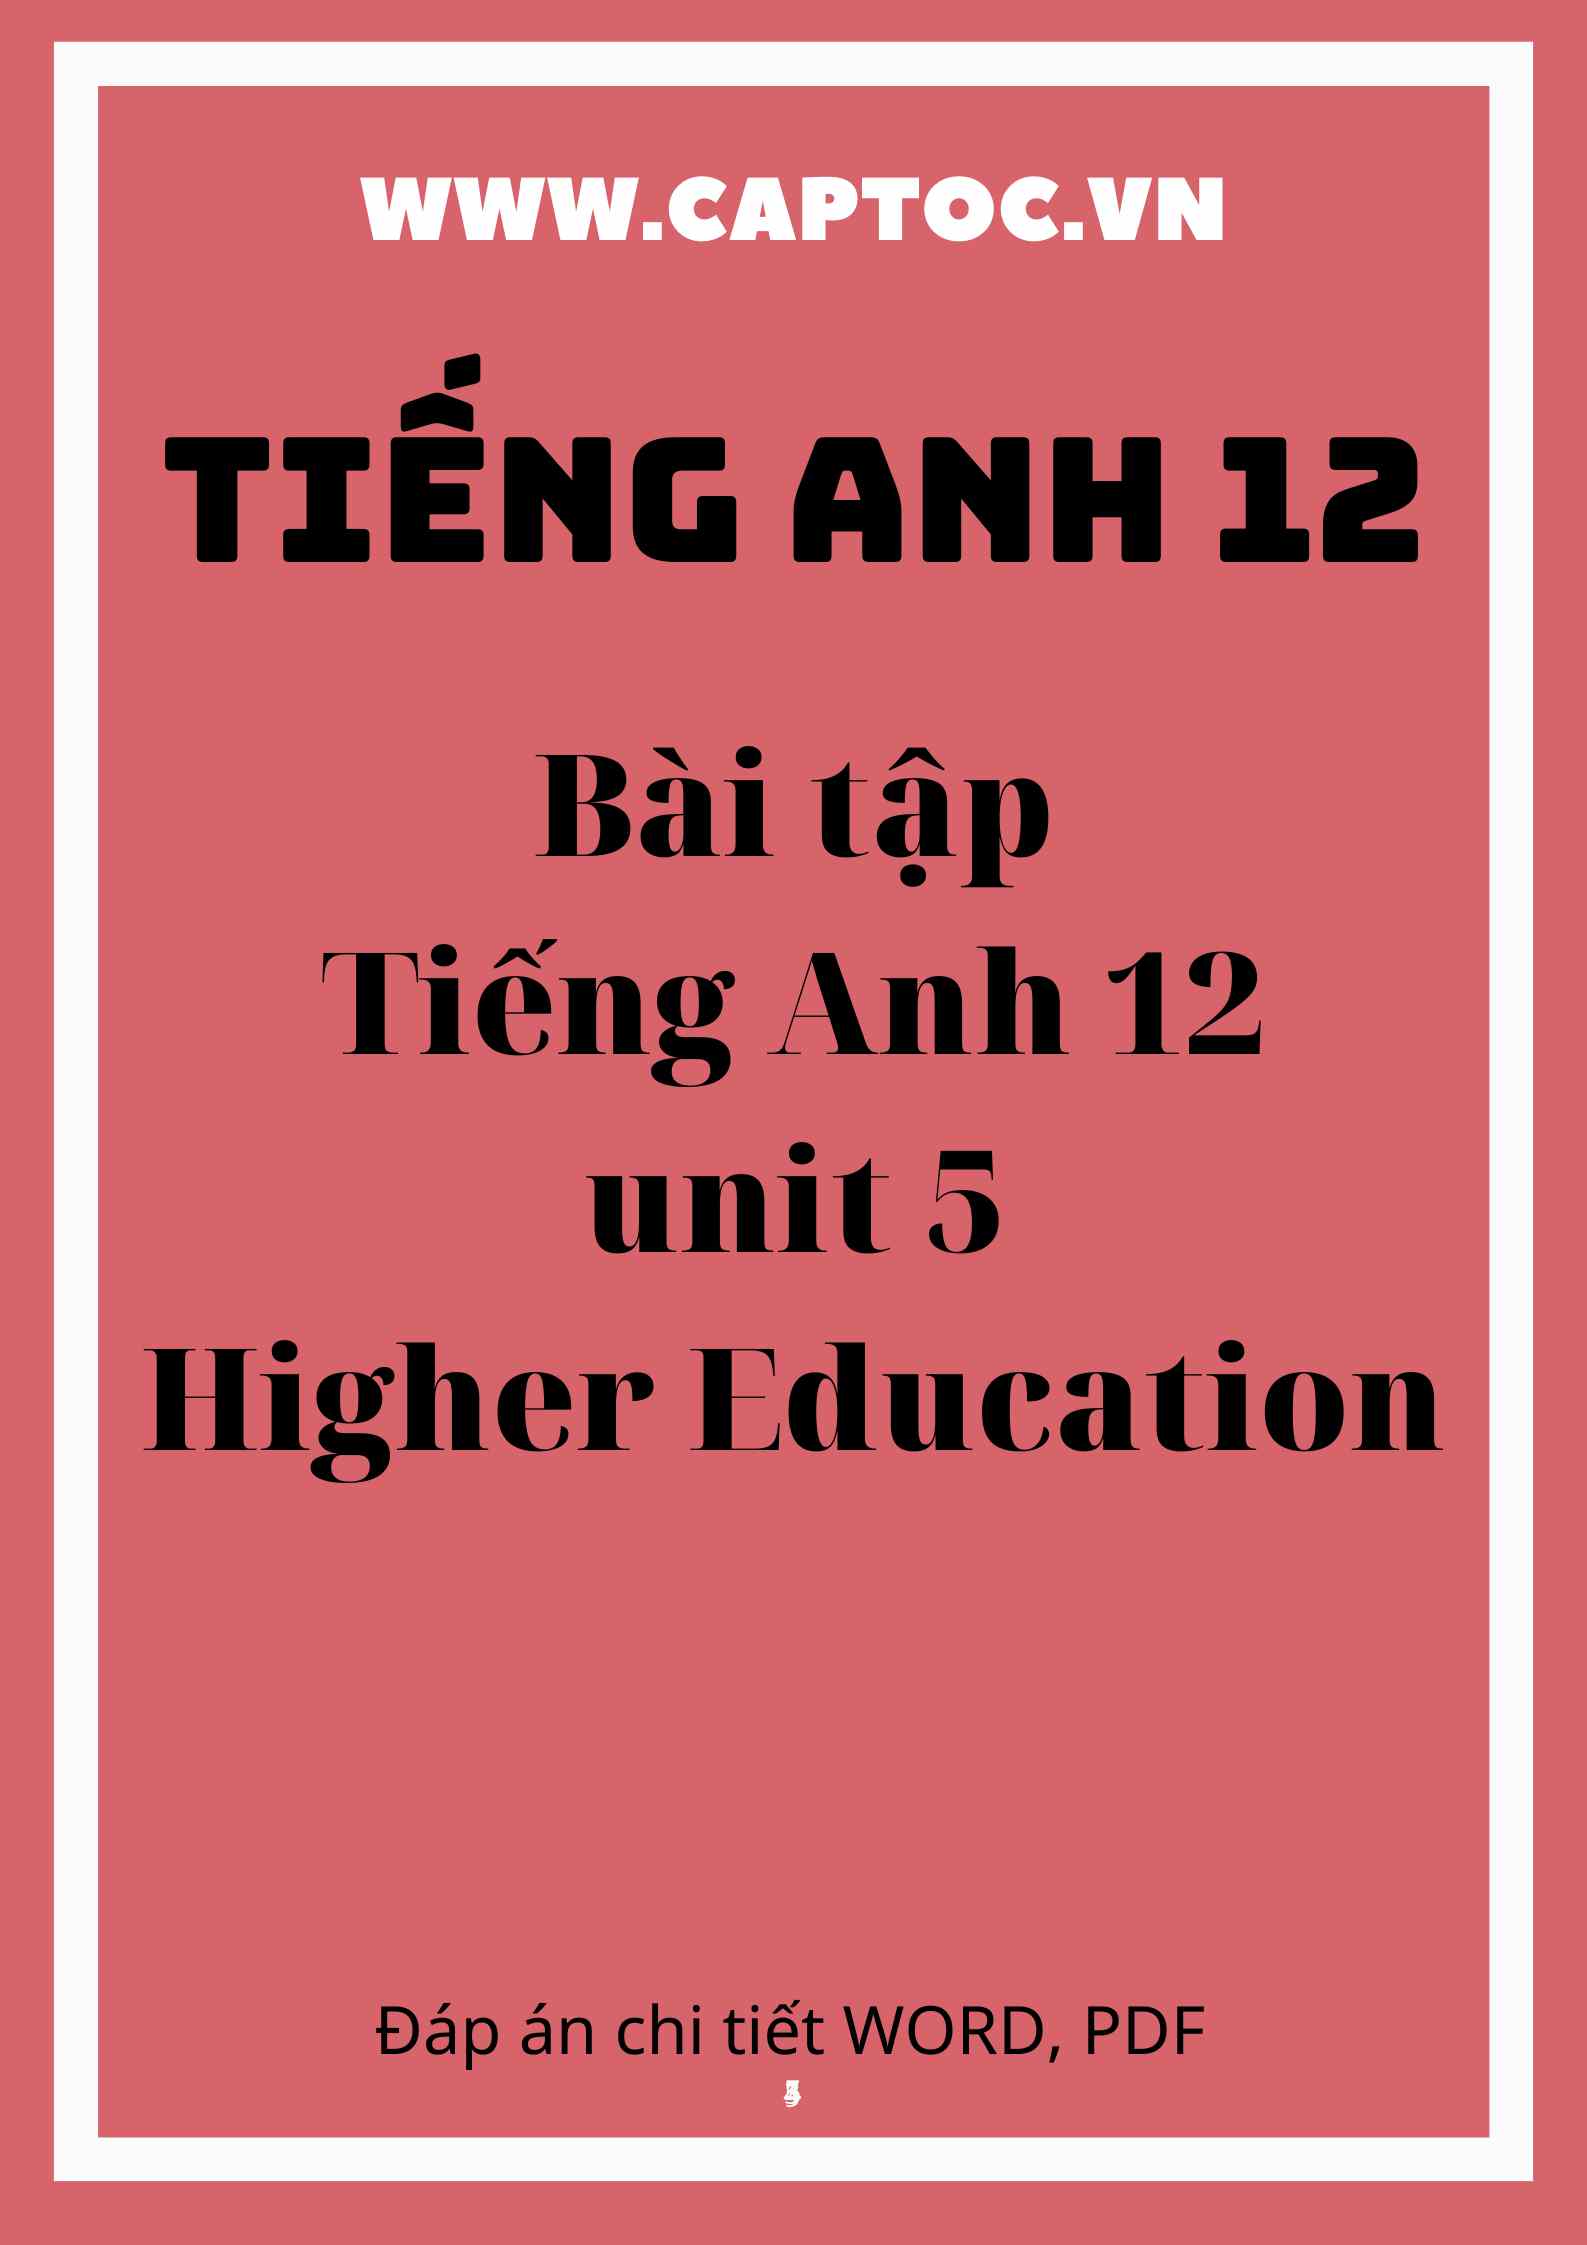 Bài tập Tiếng Anh 12 unit 5 Higher Education